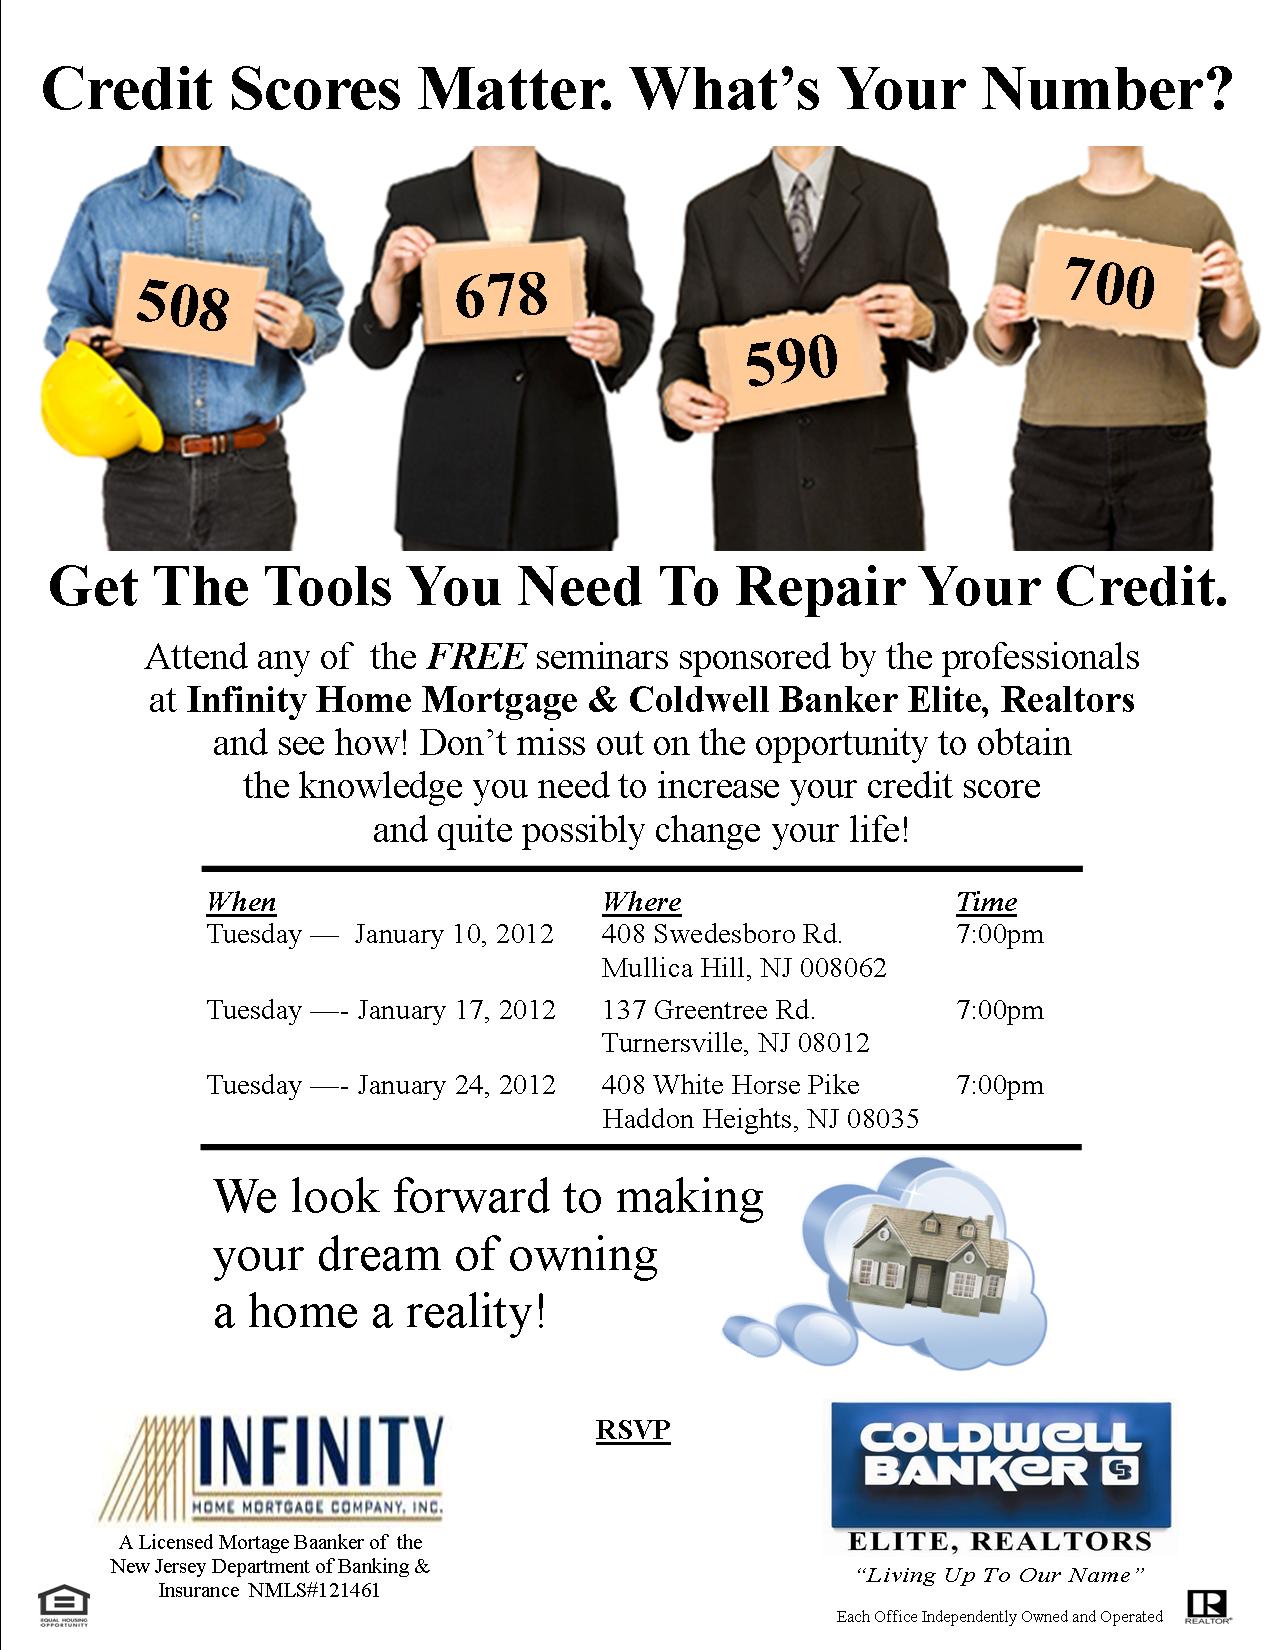 Credit Repair Training Program